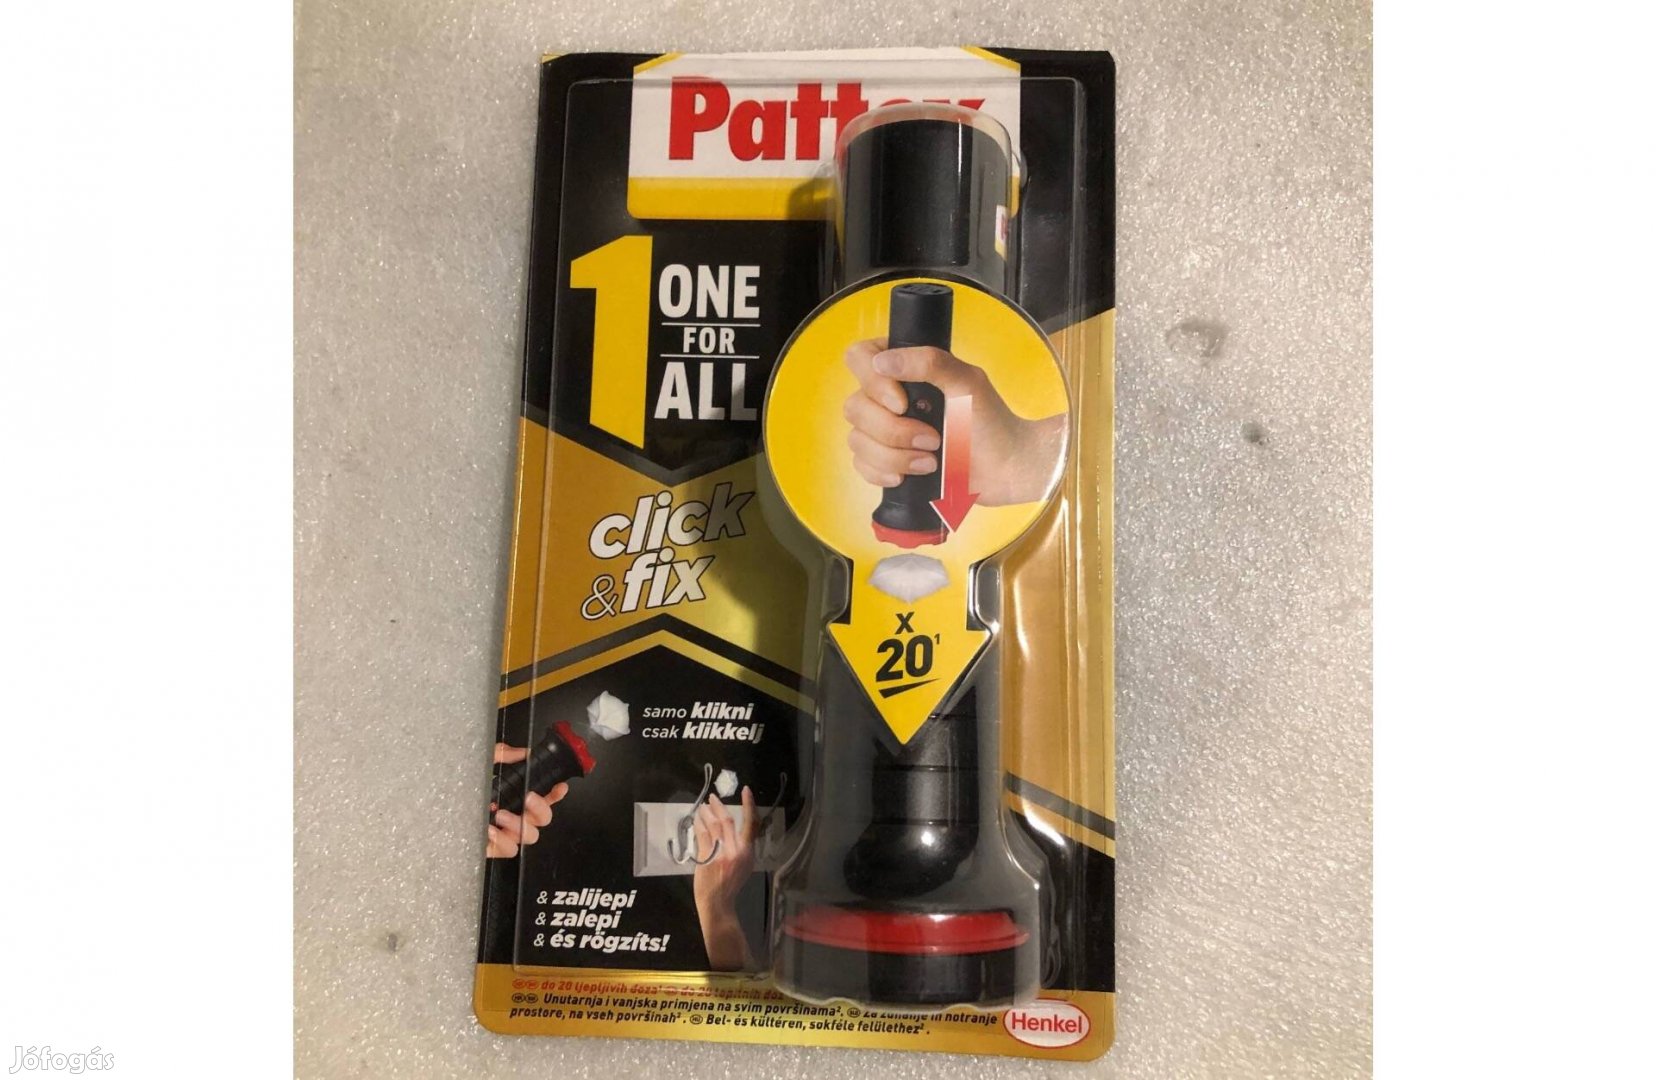 Pattex One For All Click&Fix ragasztó - 20 adag egyszerű és gyors